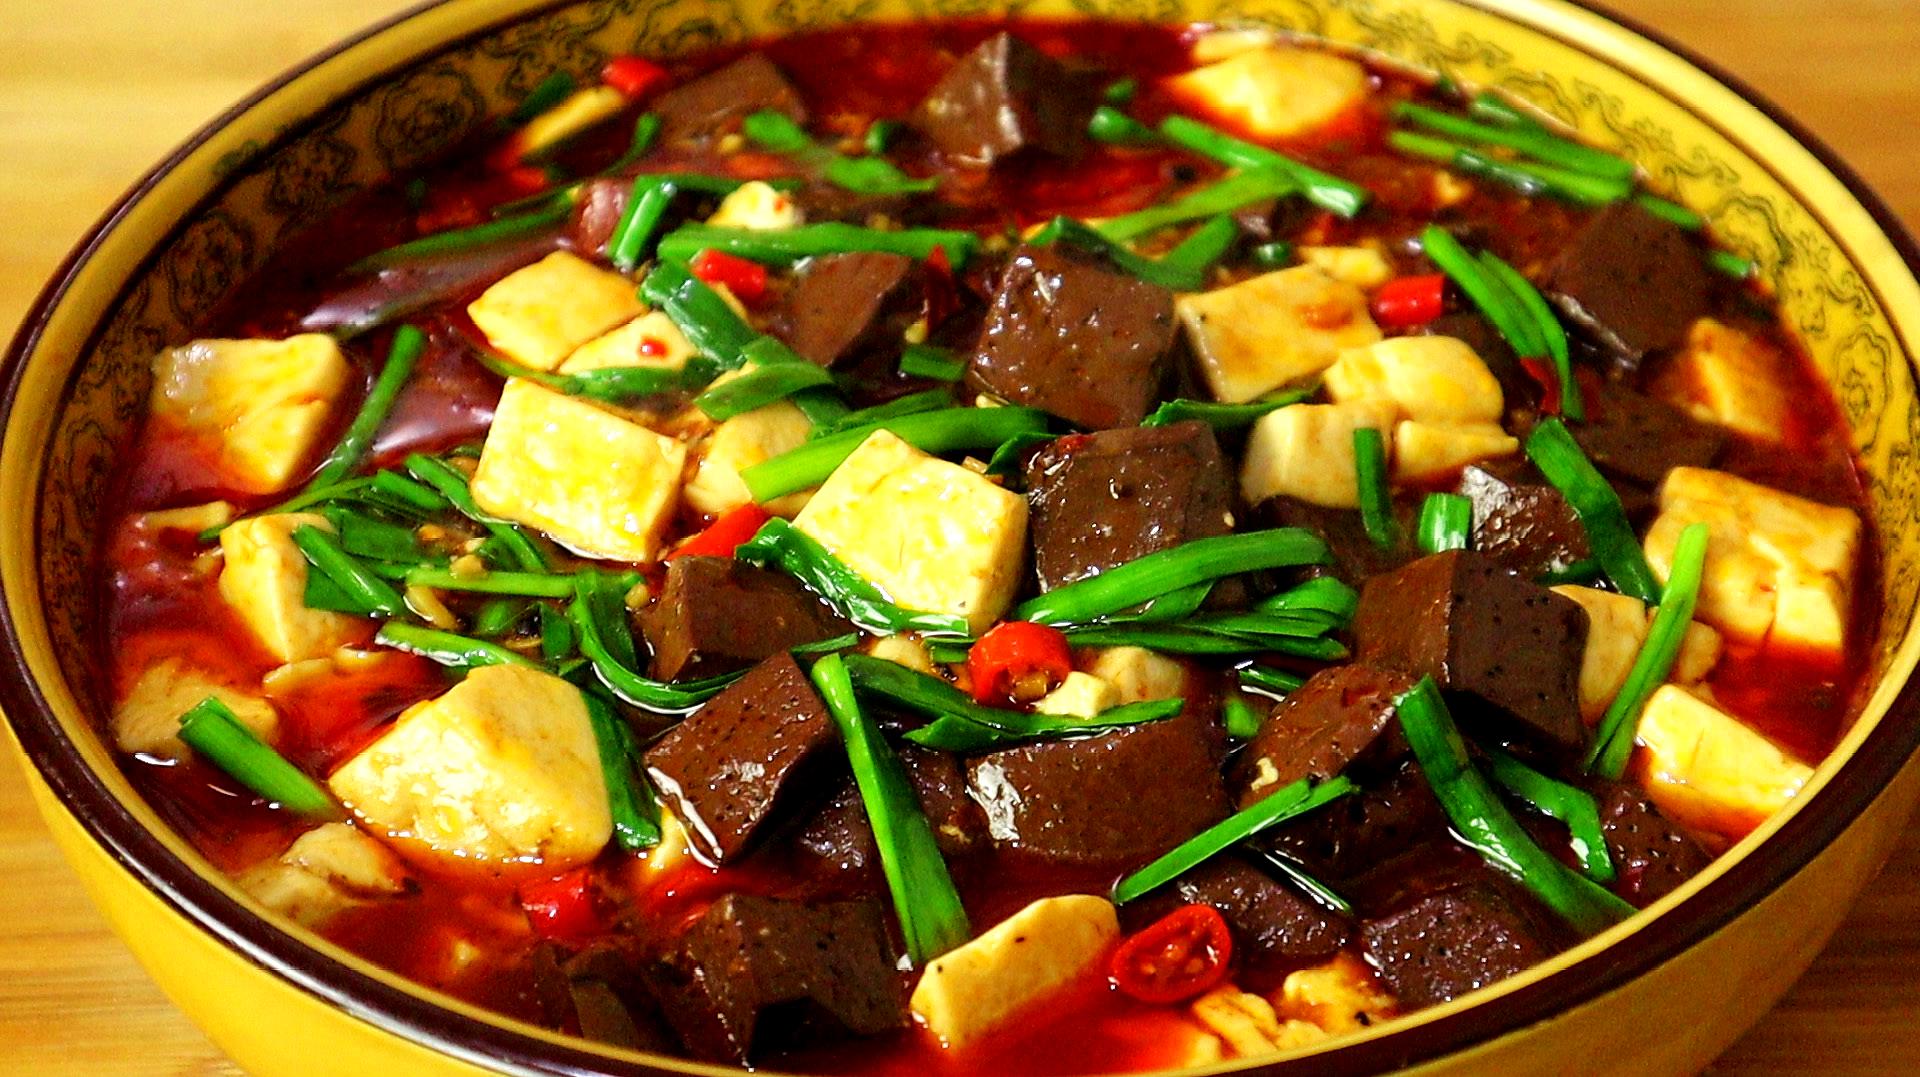 分享六道美味家常菜:猪血烧豆腐上榜,香菇肉片上桌孩子吵着吃!